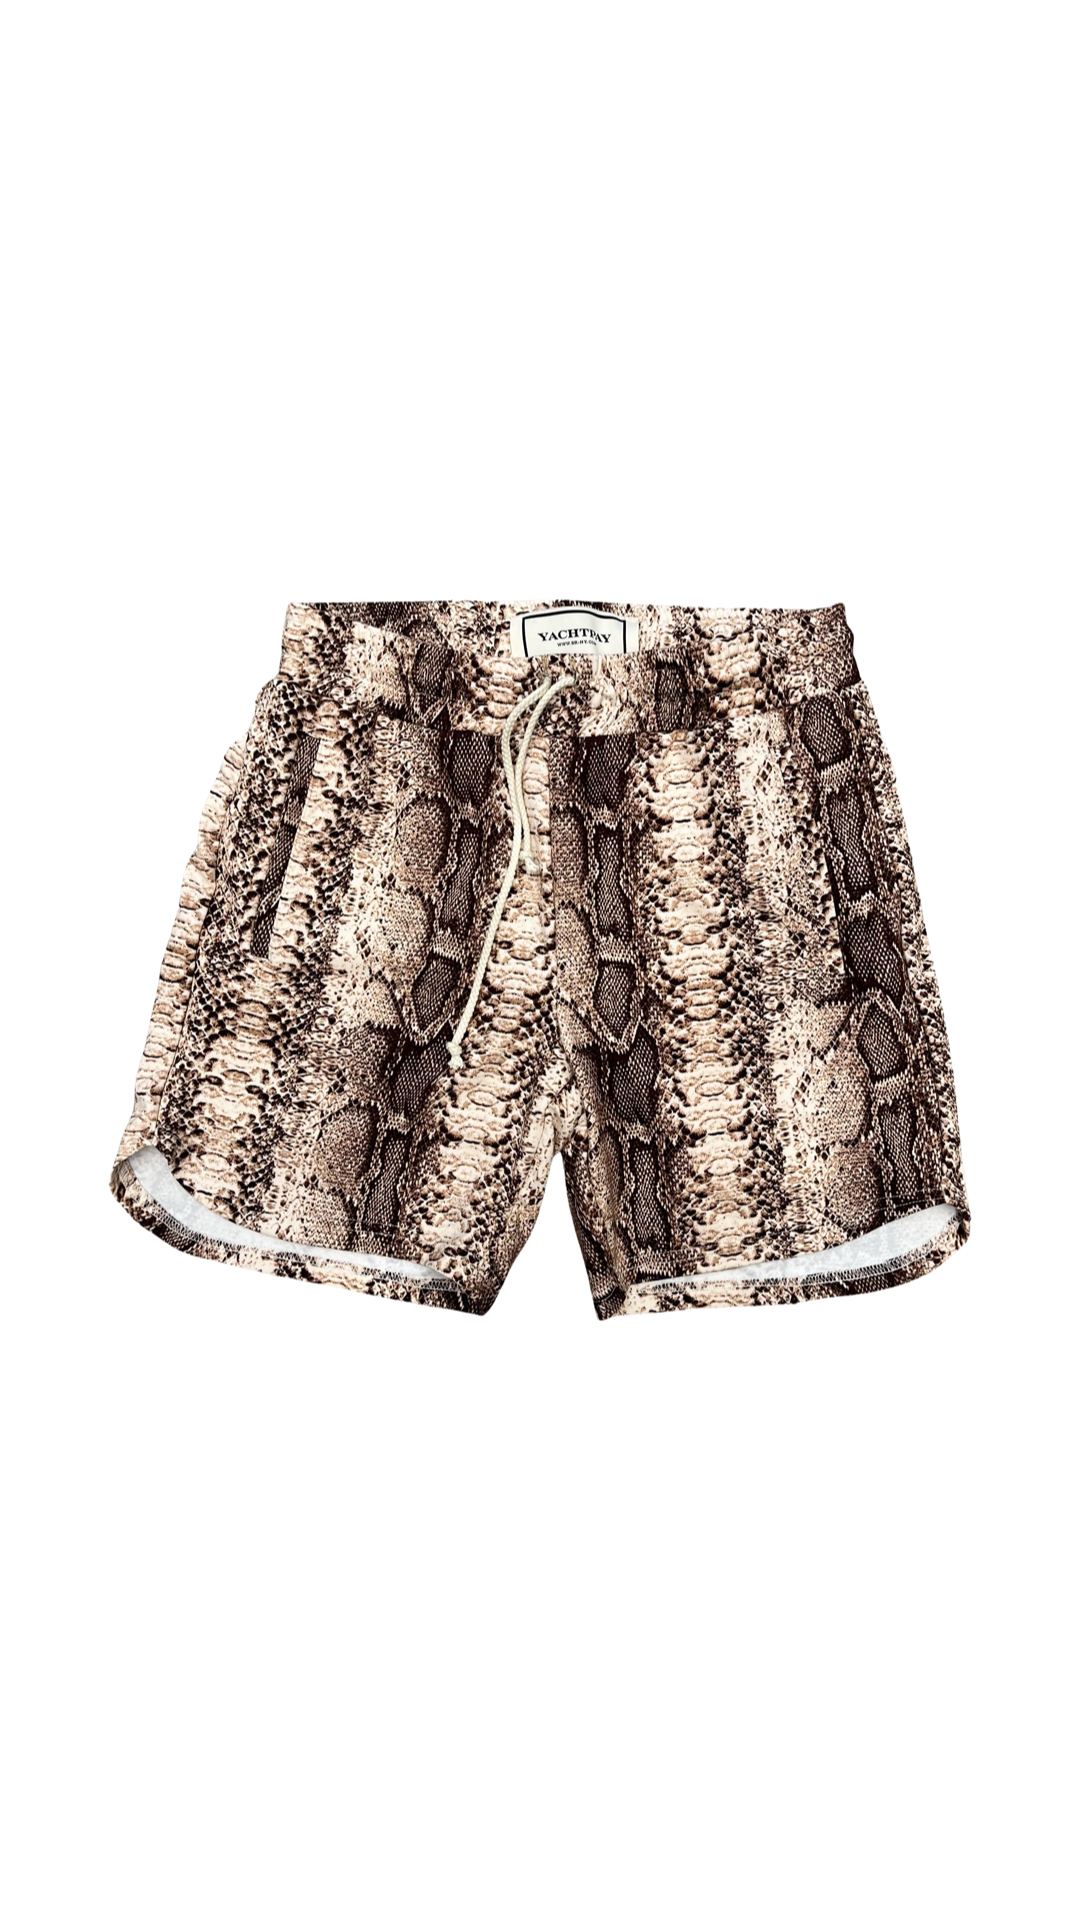 Yachtpay “snakeskin” camp shorts